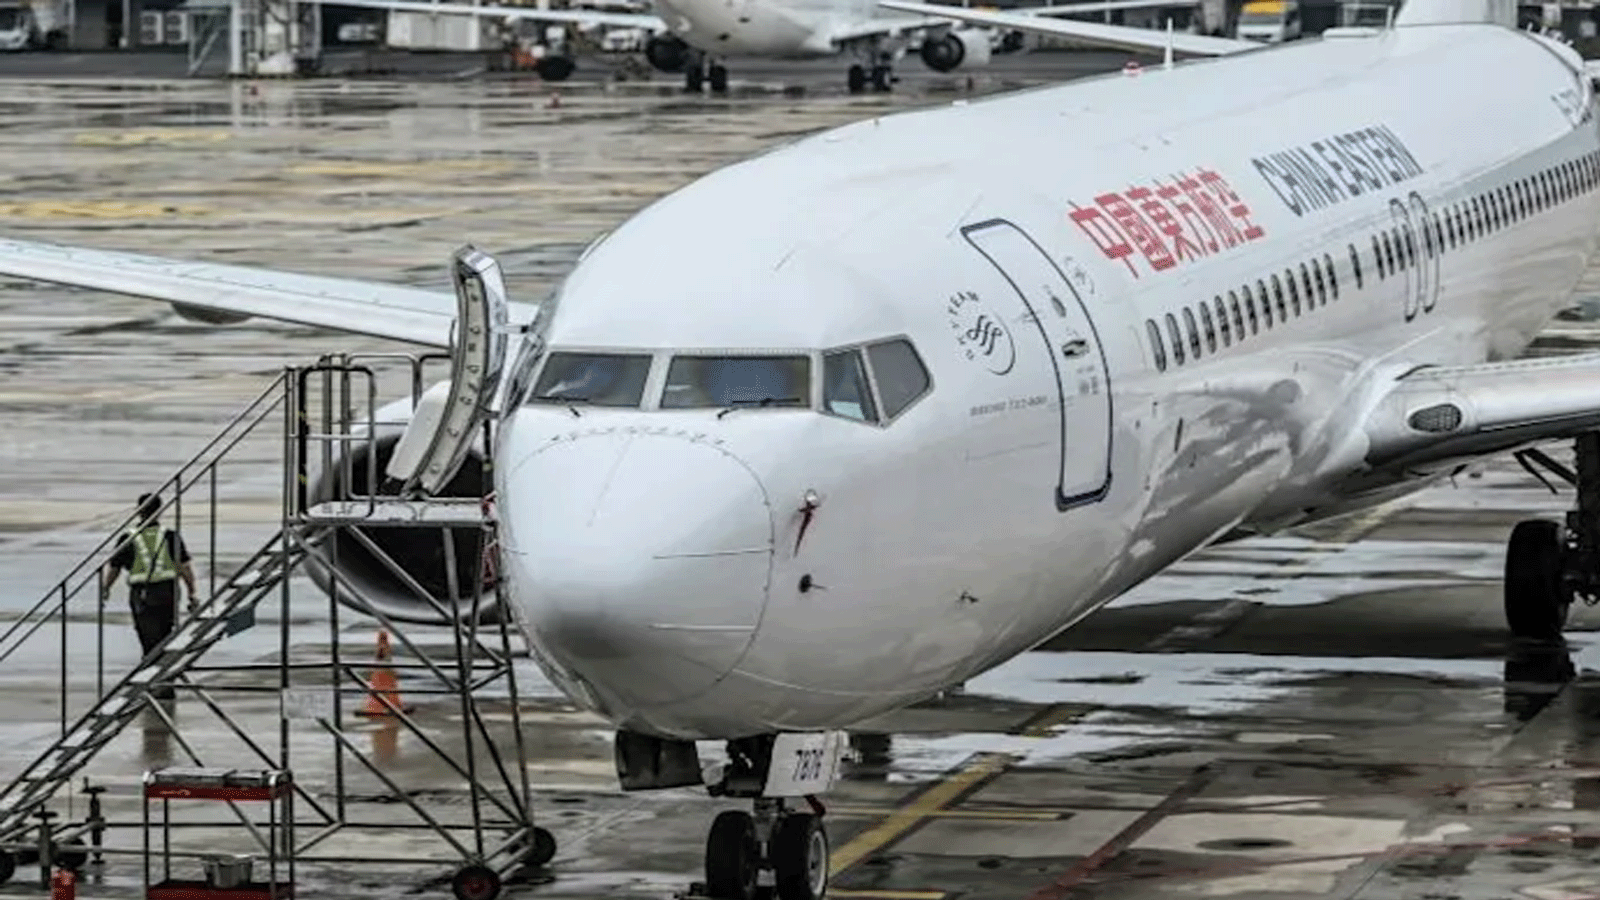 استأنفت شركة طيران شرق الصين رحلاتها من طراز بوينج 737-800 بعد حادث التحطم المميت في آذار\ مارس الماضي